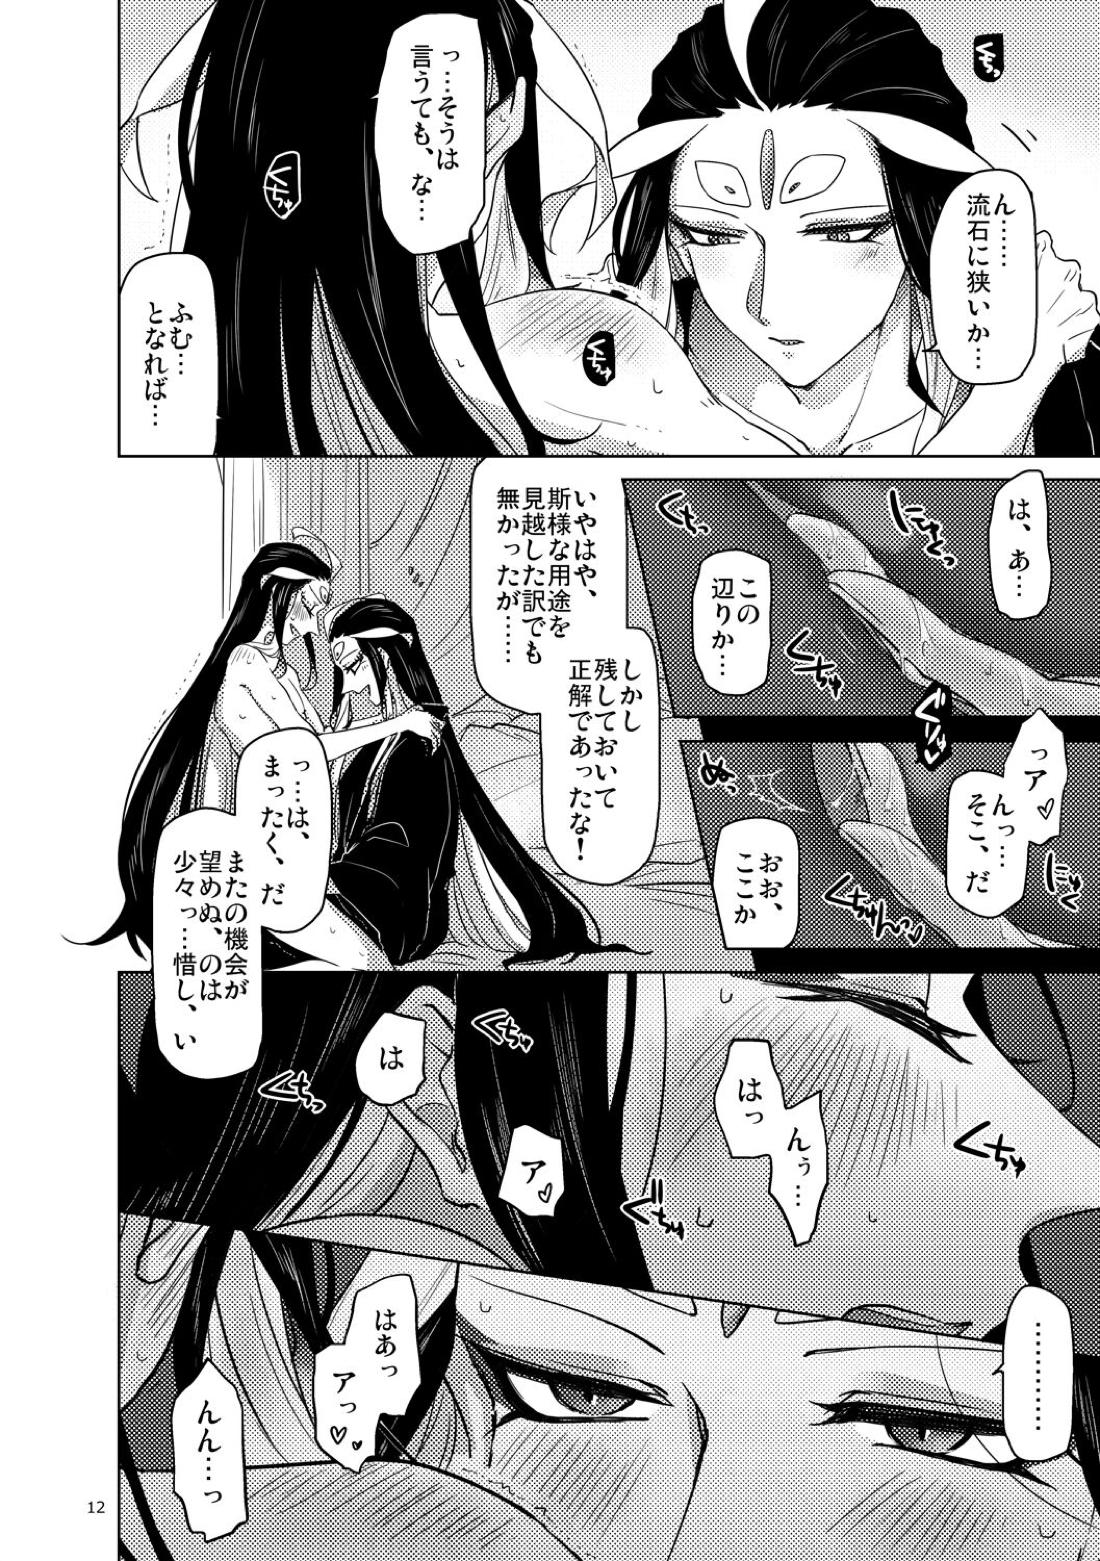 【BL漫画 Fate/Grand Order】男性体と無性体の始皇帝が同期するために媚薬を口にしながら肌を重ねるイチャイチャボーイズラブエッチ13